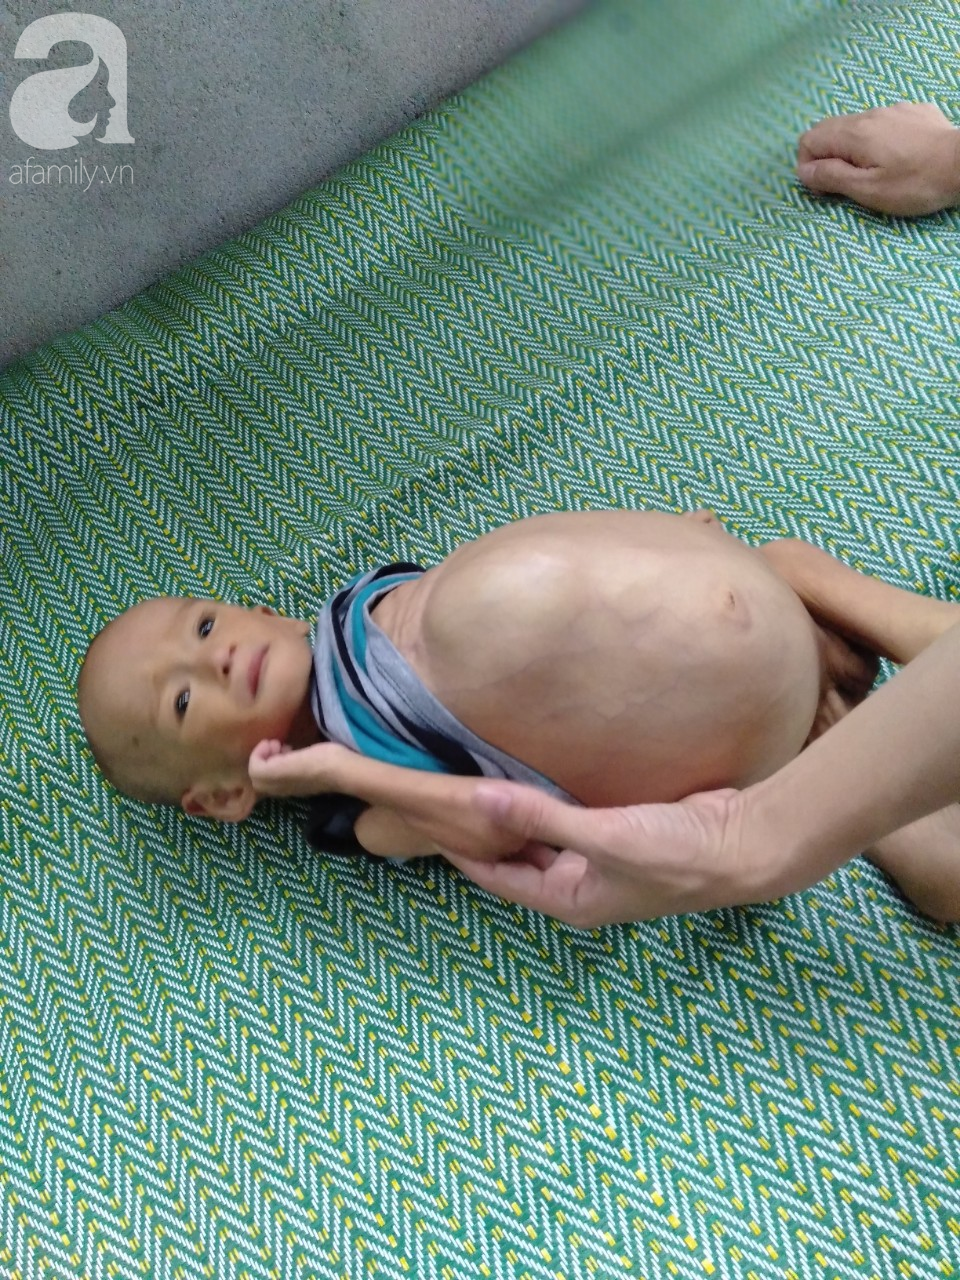 Sự sống mong manh của bé trai 1 tuổi, chỉ nặng 6kg, bụng phình to như cái trống mà mẹ nghèo không tiền chữa trị - Ảnh 9.